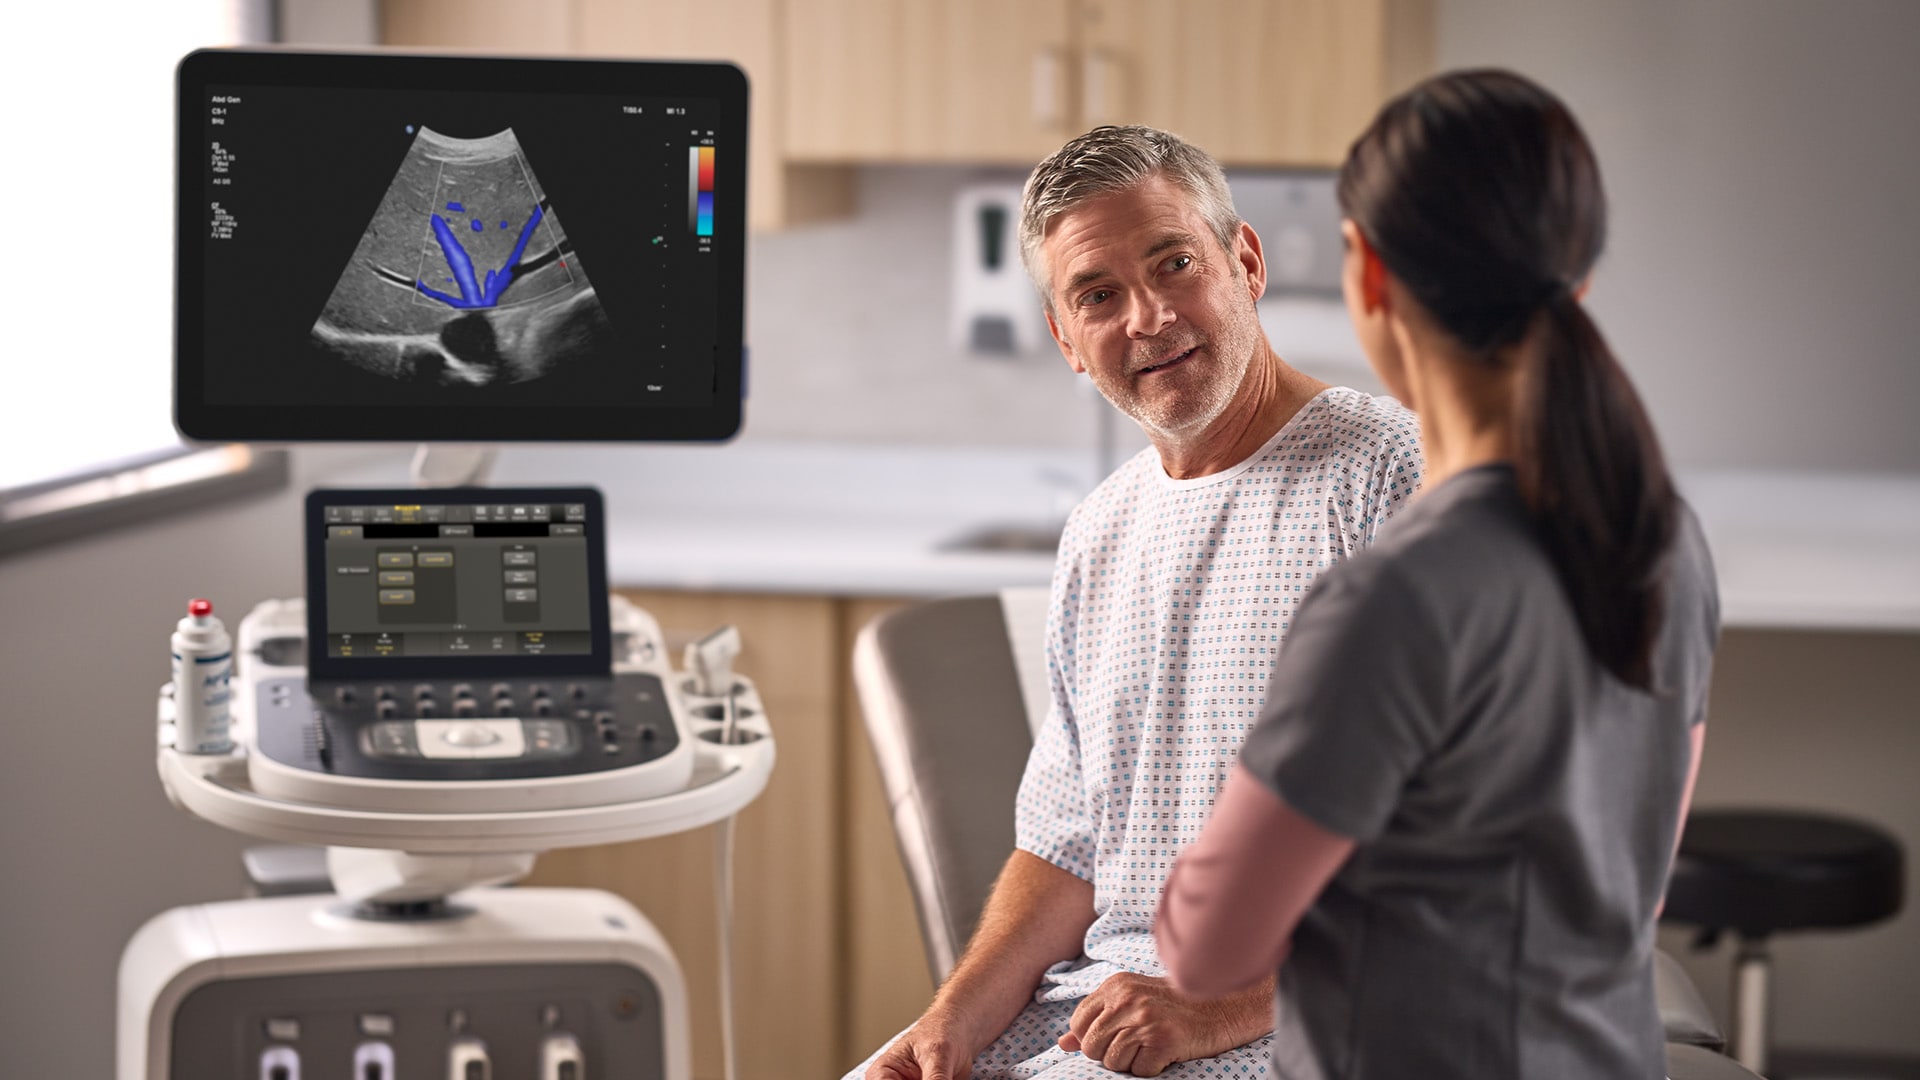 自動画像調整や立体感のある血流イメージにより、より迅速で確実な診断をサポート フィリップス超音波診断装置 「EPIQ」/「Affiniti」ソフトウェア「VM10」と、 超高周波マイクロリニア「mL26-8トランスジューサ」を3月より発売